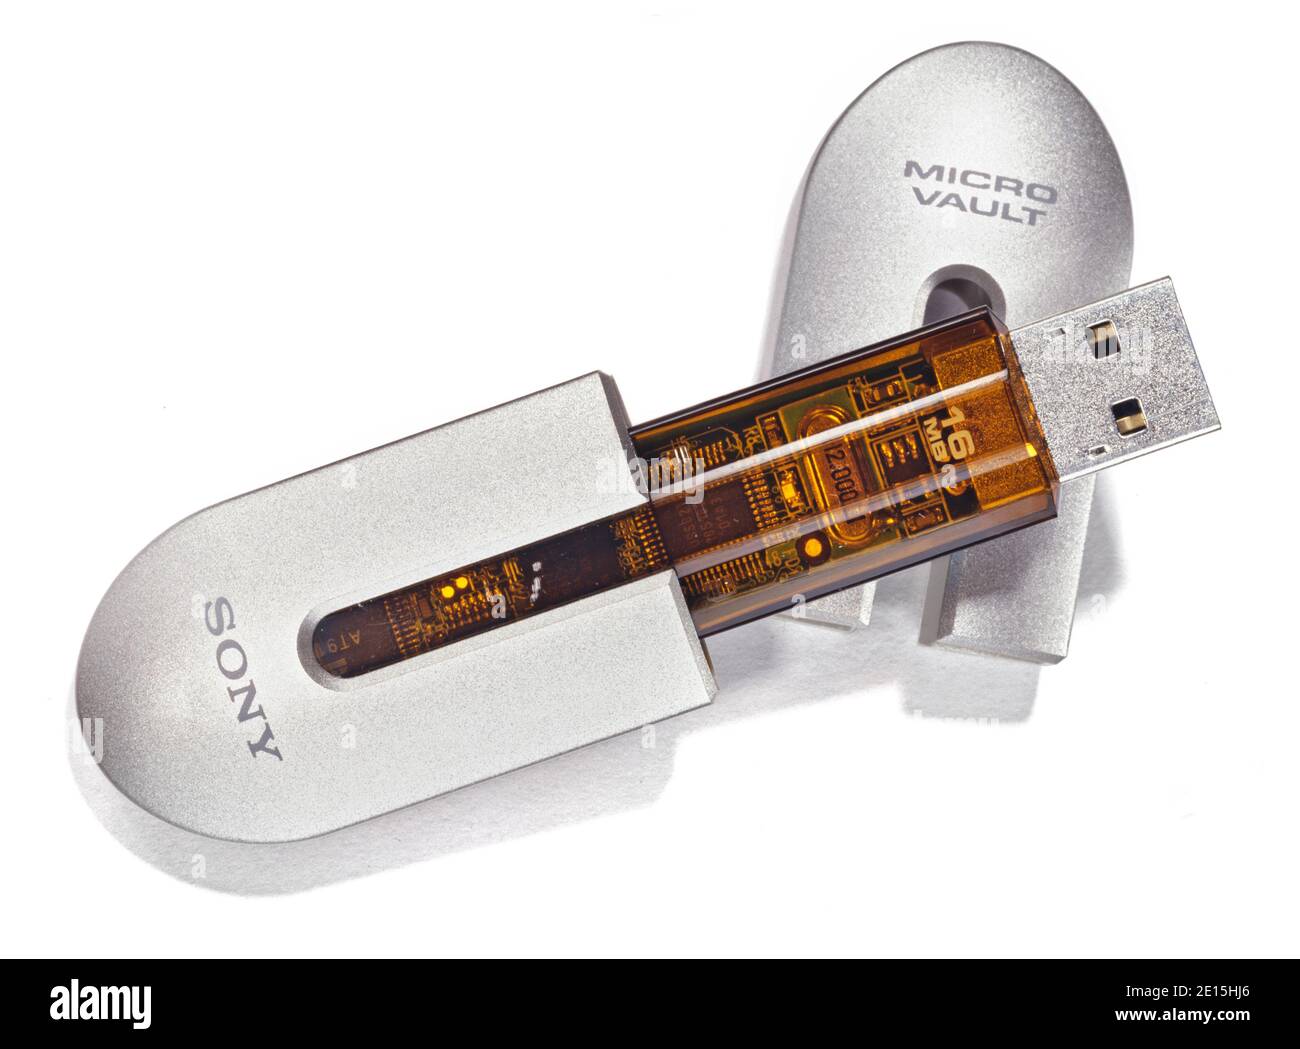 SONY Micro Vault USB-Laufwerk auf weißem Hintergrund fotografiert Stockfoto